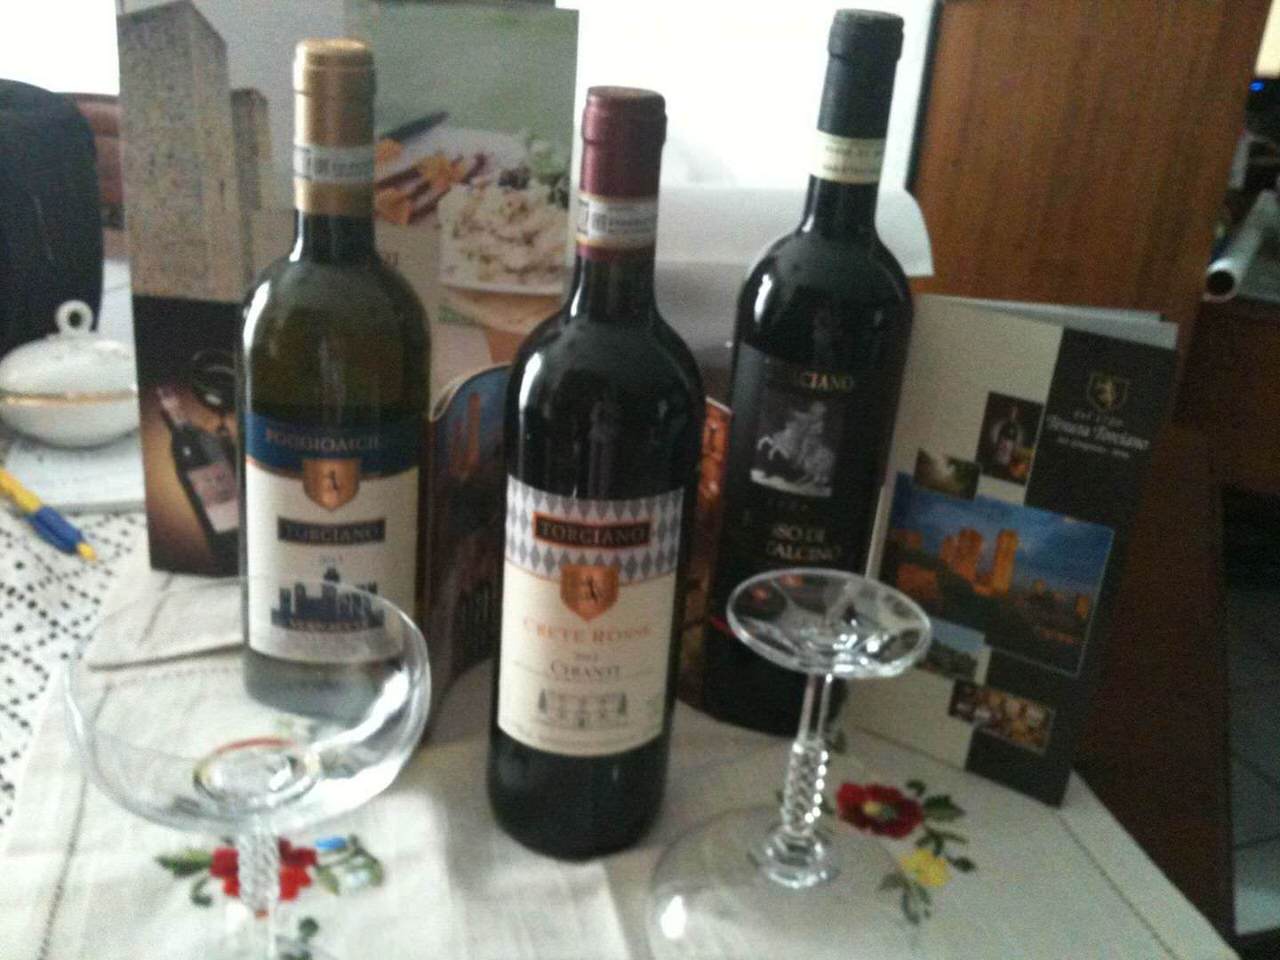 Nuova recensione su 3 grandi vini di Tenuta Torciano